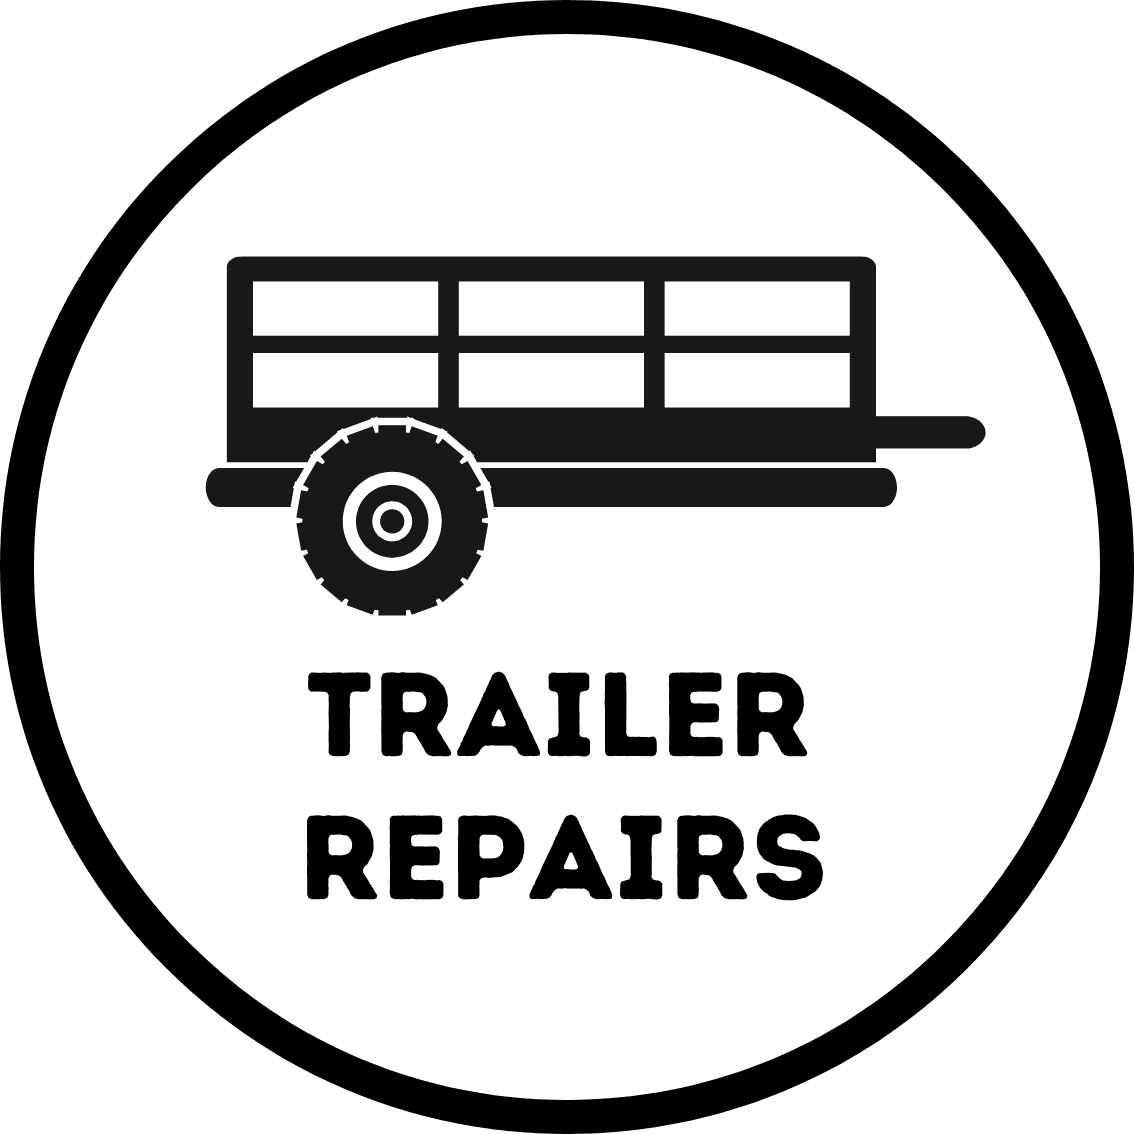 Great for trailer repairs